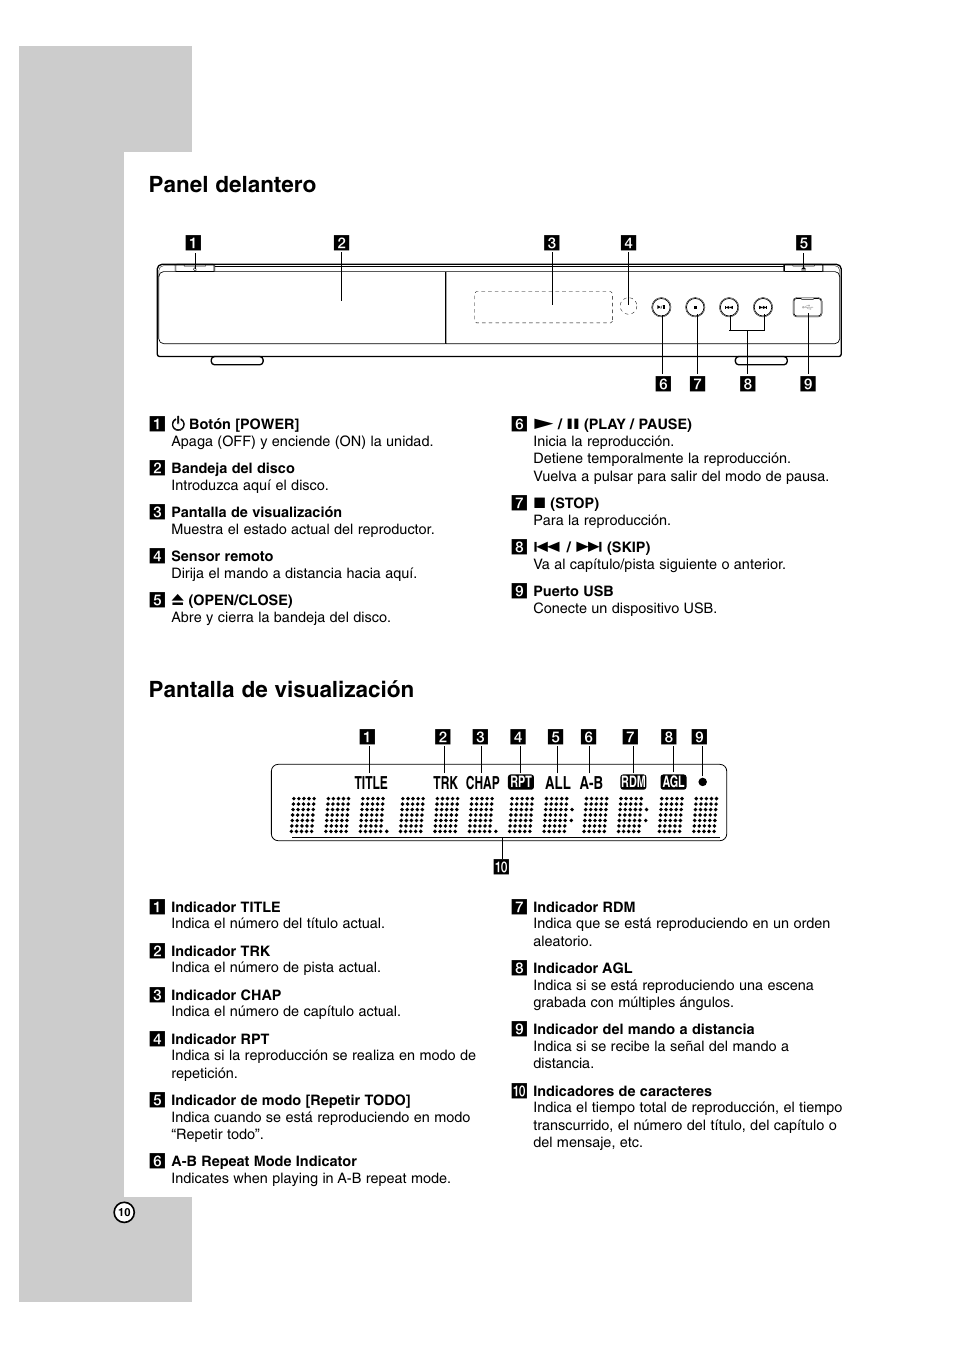 Panel delantero, Pantalla de visualización, Title chap trk a-b all | LG BD300 Manual del usuario | Página 10 / 40